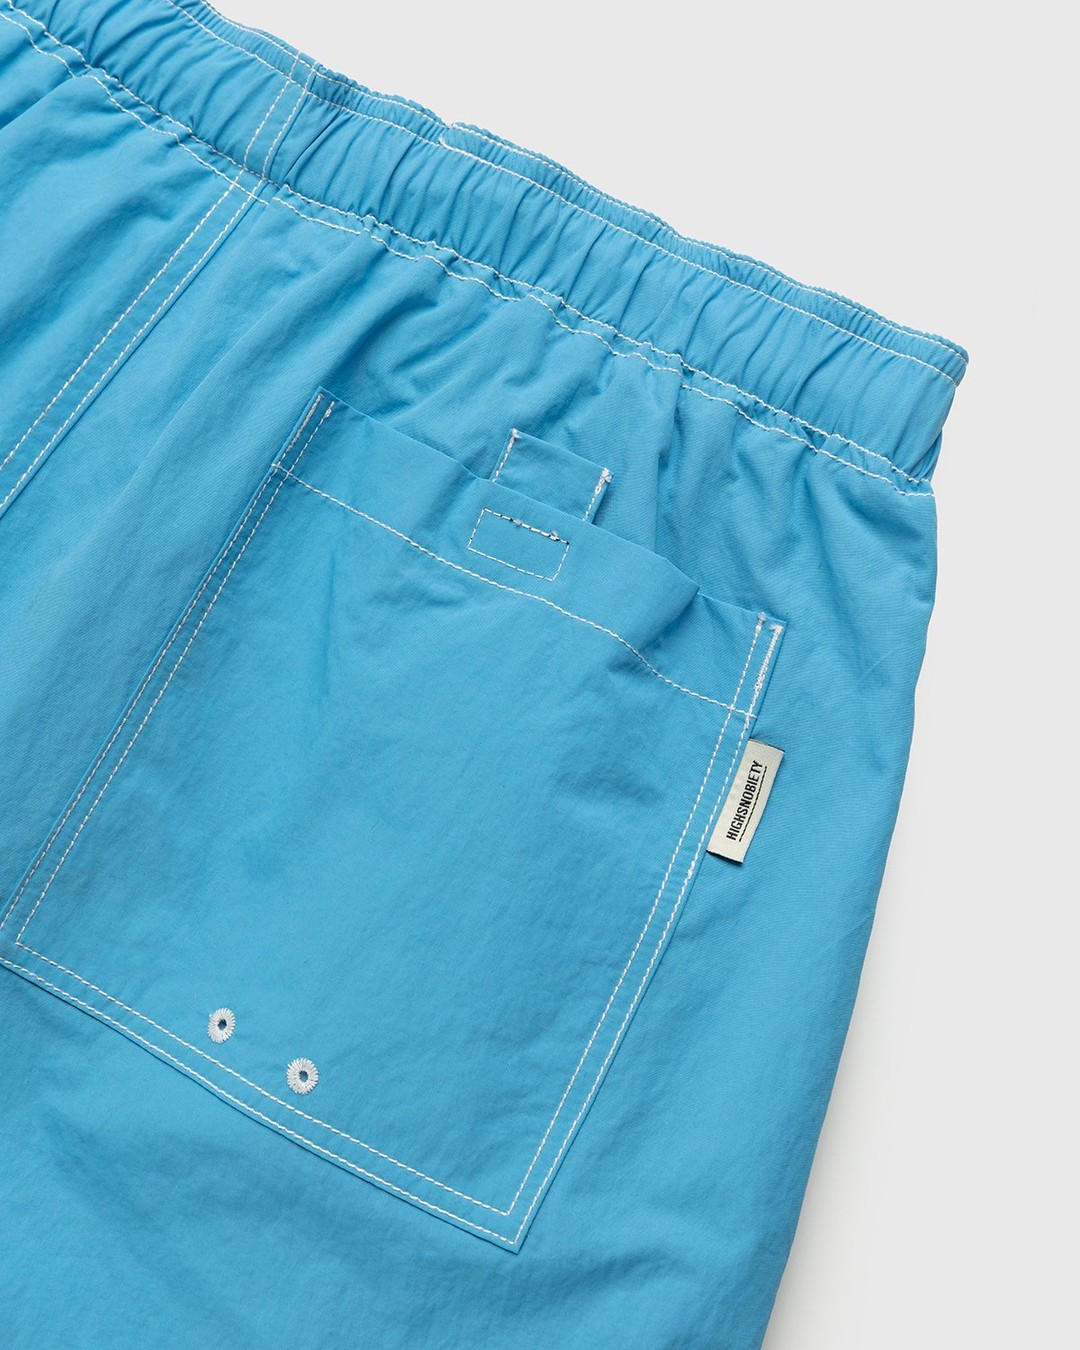 Highsnobiety – Contrast Brushed Nylon Water Shorts Blue - Shorts - Blue - Image 3